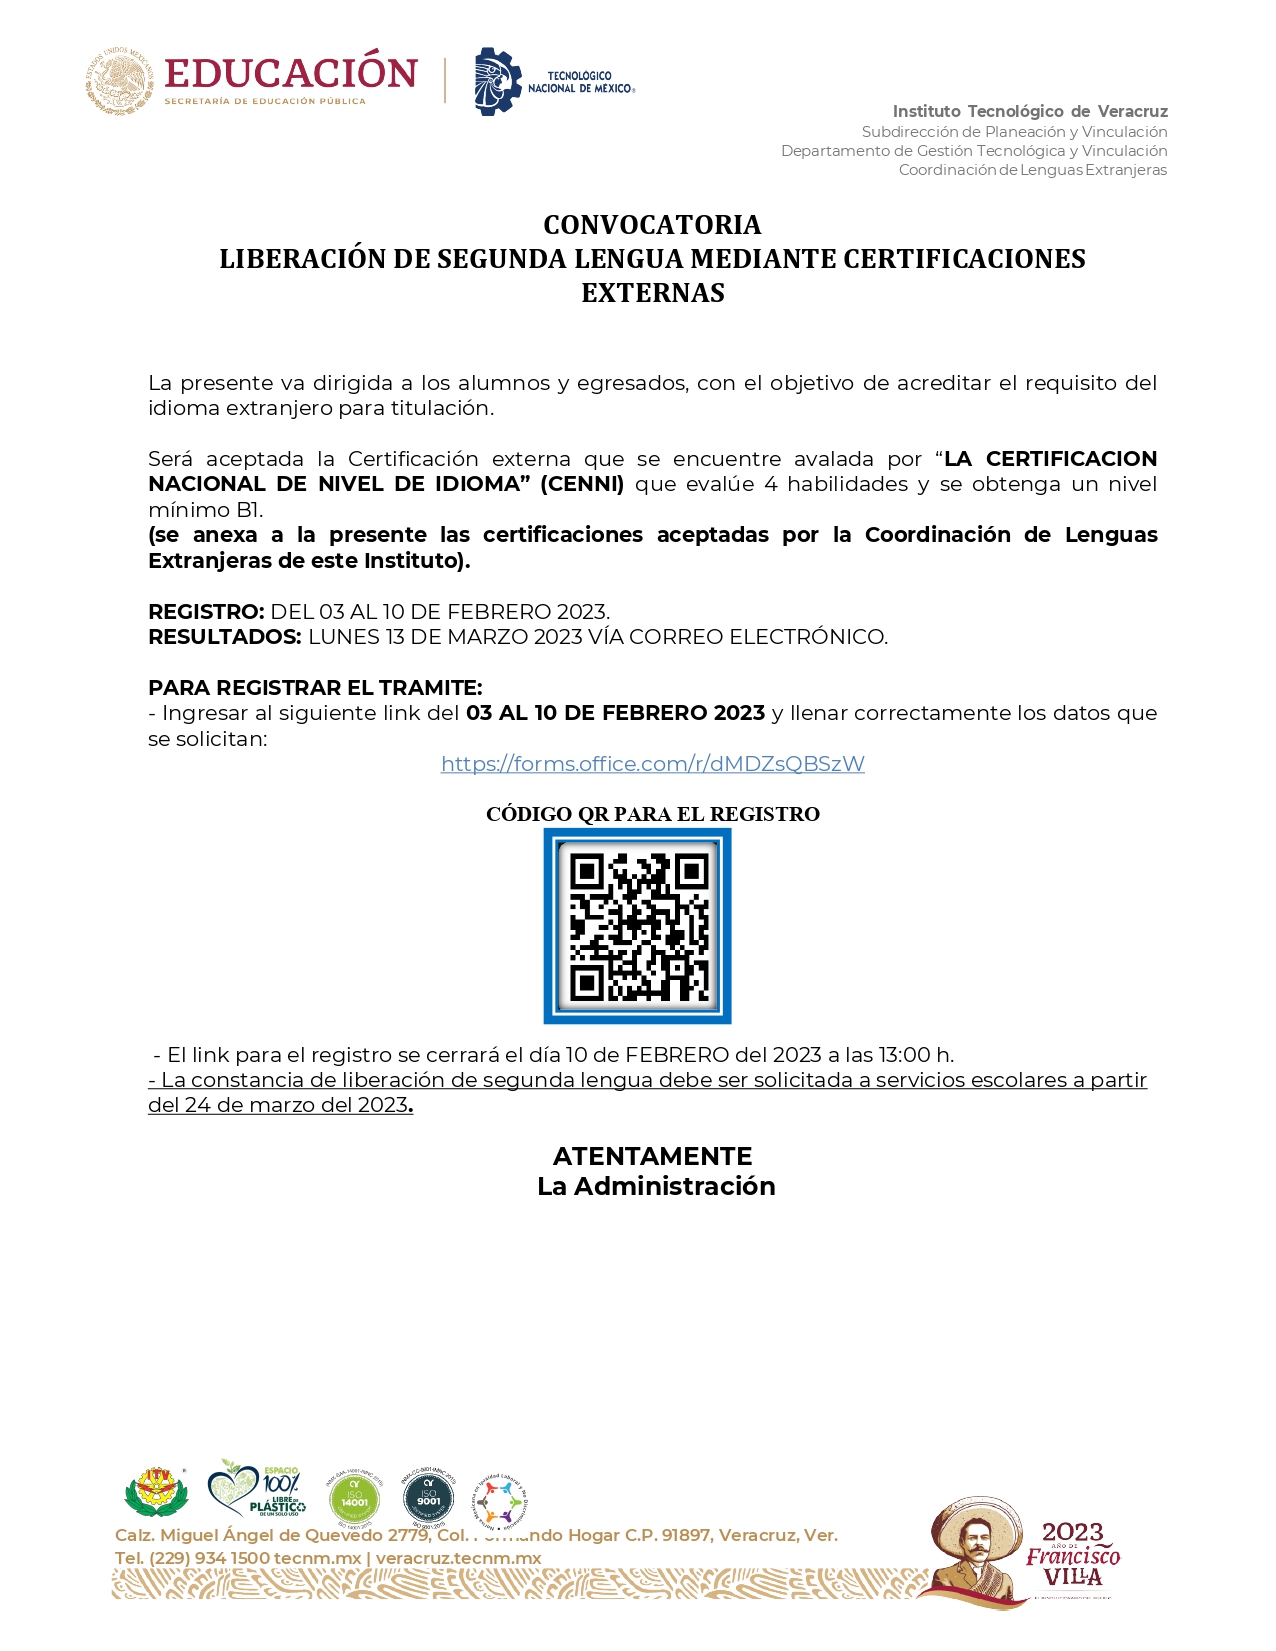 CONVOCATORIA_CERTIFICACIONES_PRIMER_MOMENTO_2023_page-0001.jpg